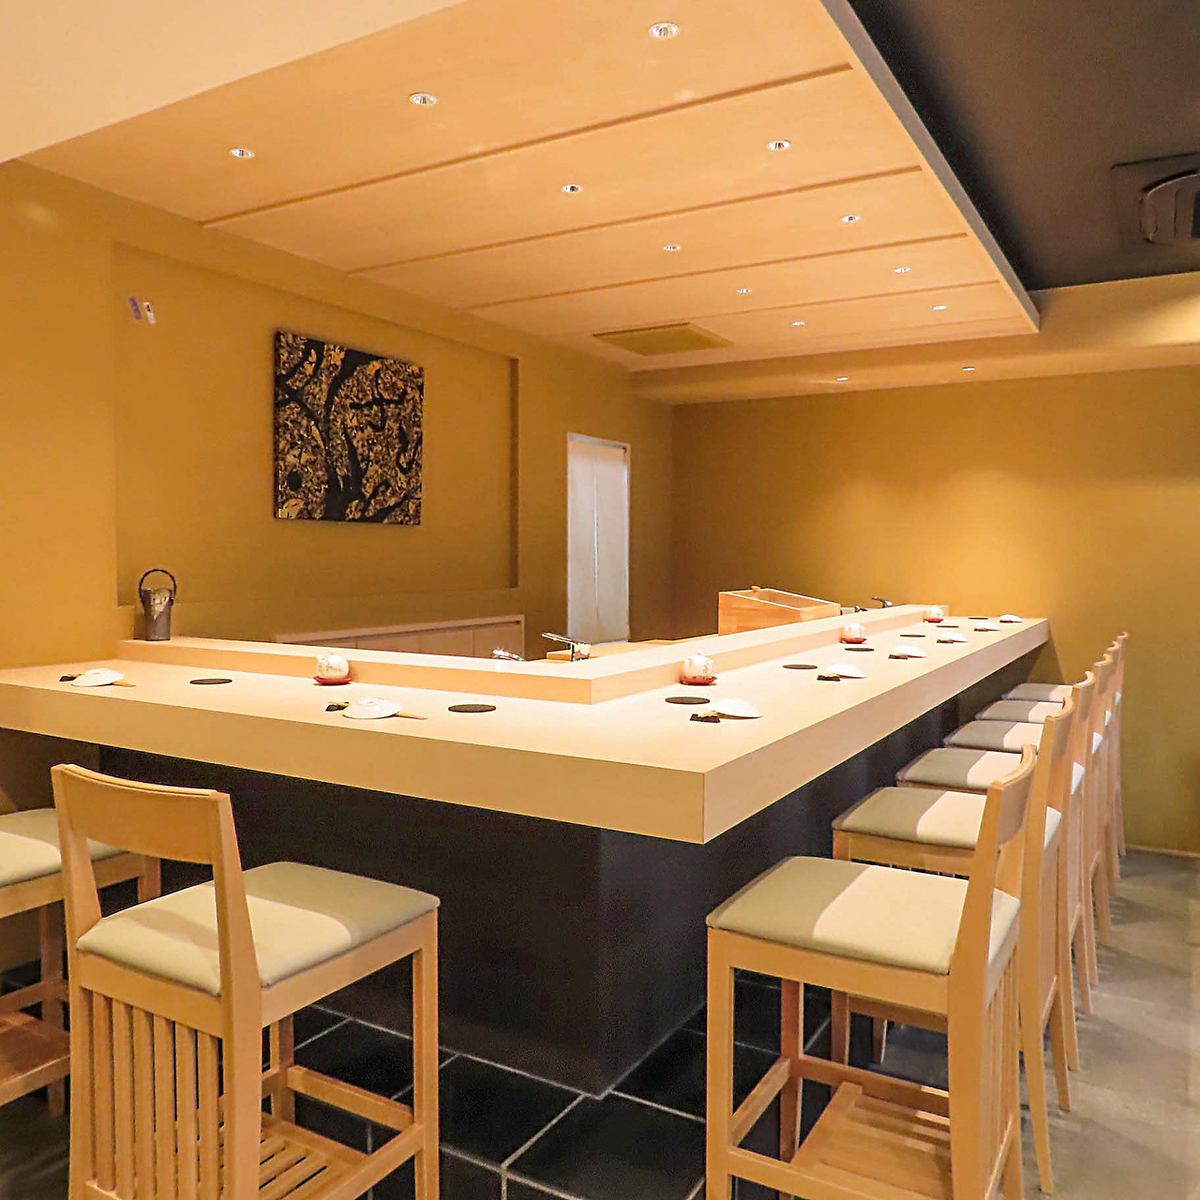 在木質餐廳中盡情享用壽司和懷石料理。